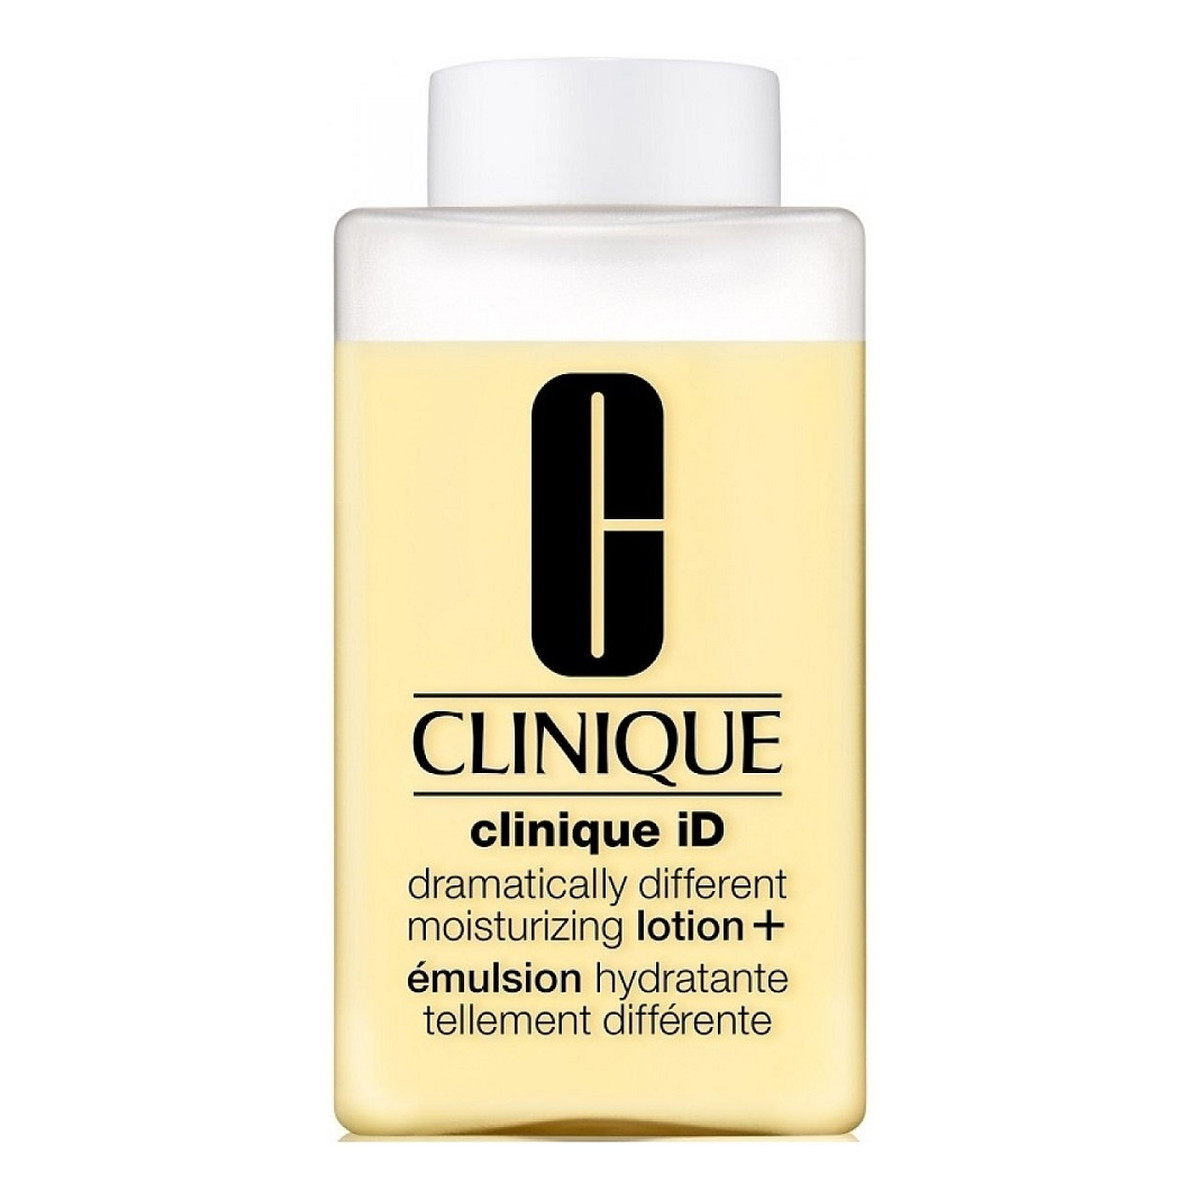 Clinique Id base dramatically different moisturizing lotion+ nawilżająca Emulsja do twarzy 115ml